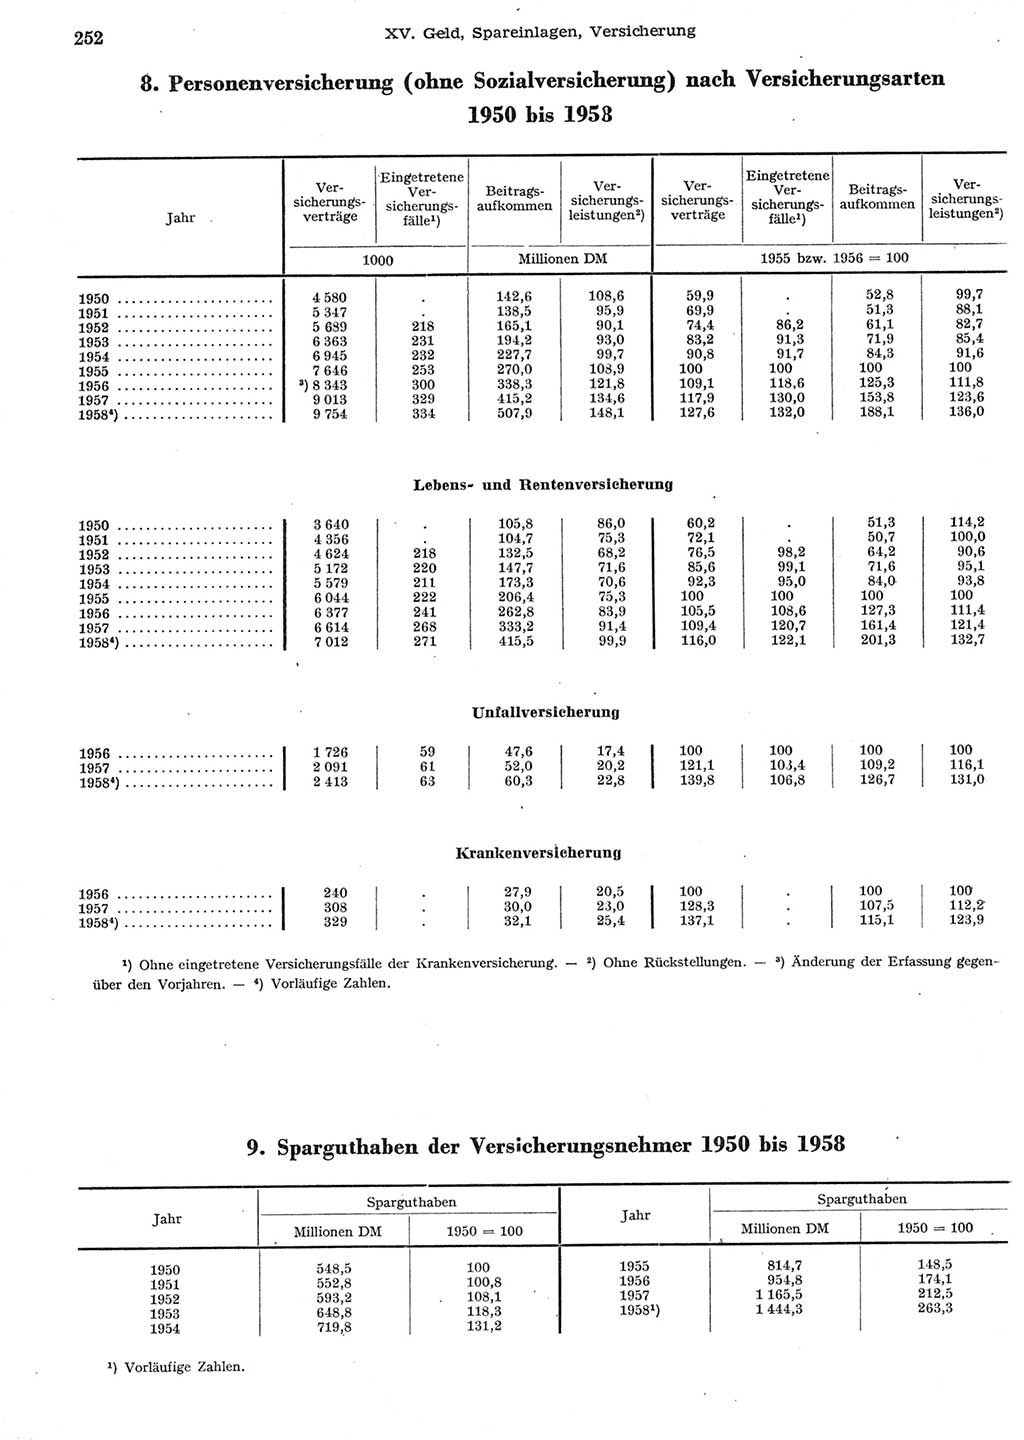 Statistisches Jahrbuch der Deutschen Demokratischen Republik (DDR) 1958, Seite 252 (Stat. Jb. DDR 1958, S. 252)